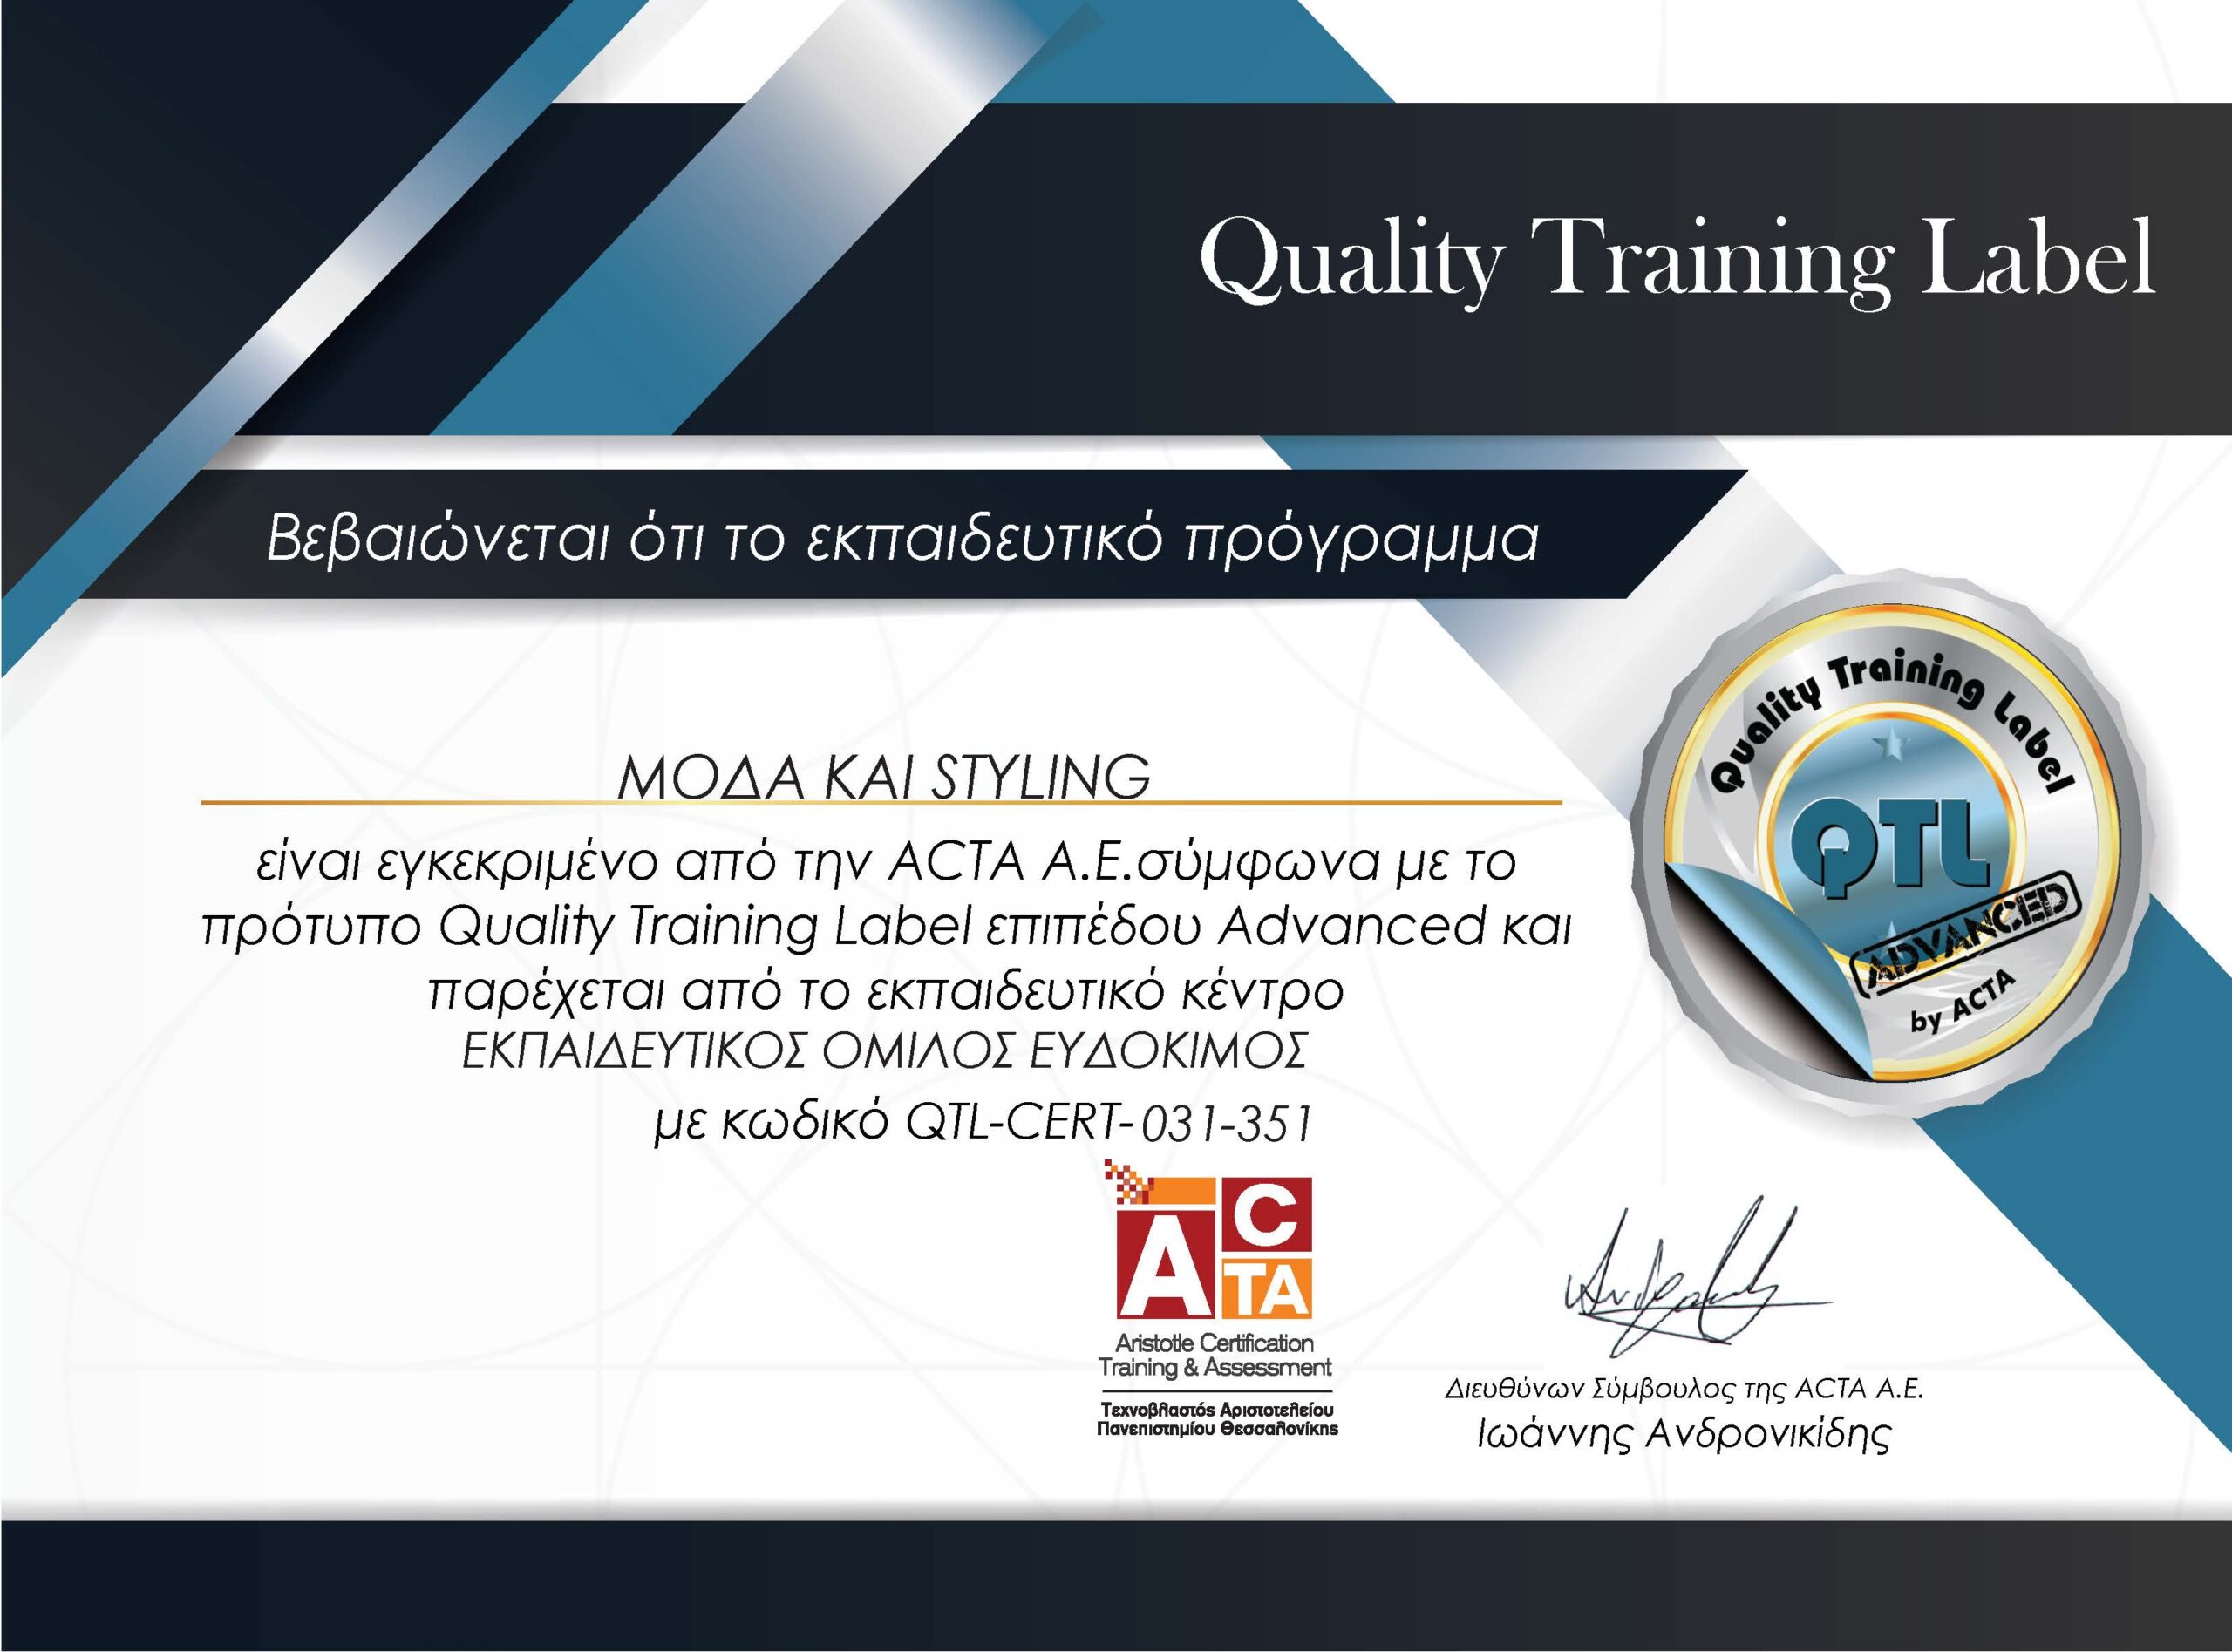 Μόδα και Styling - Πιστοποιημένο εκπαιδευτικό πρόγραμμα της ACTA σύμφωνα με το πρότυπο QTL επιπέδου Advanced